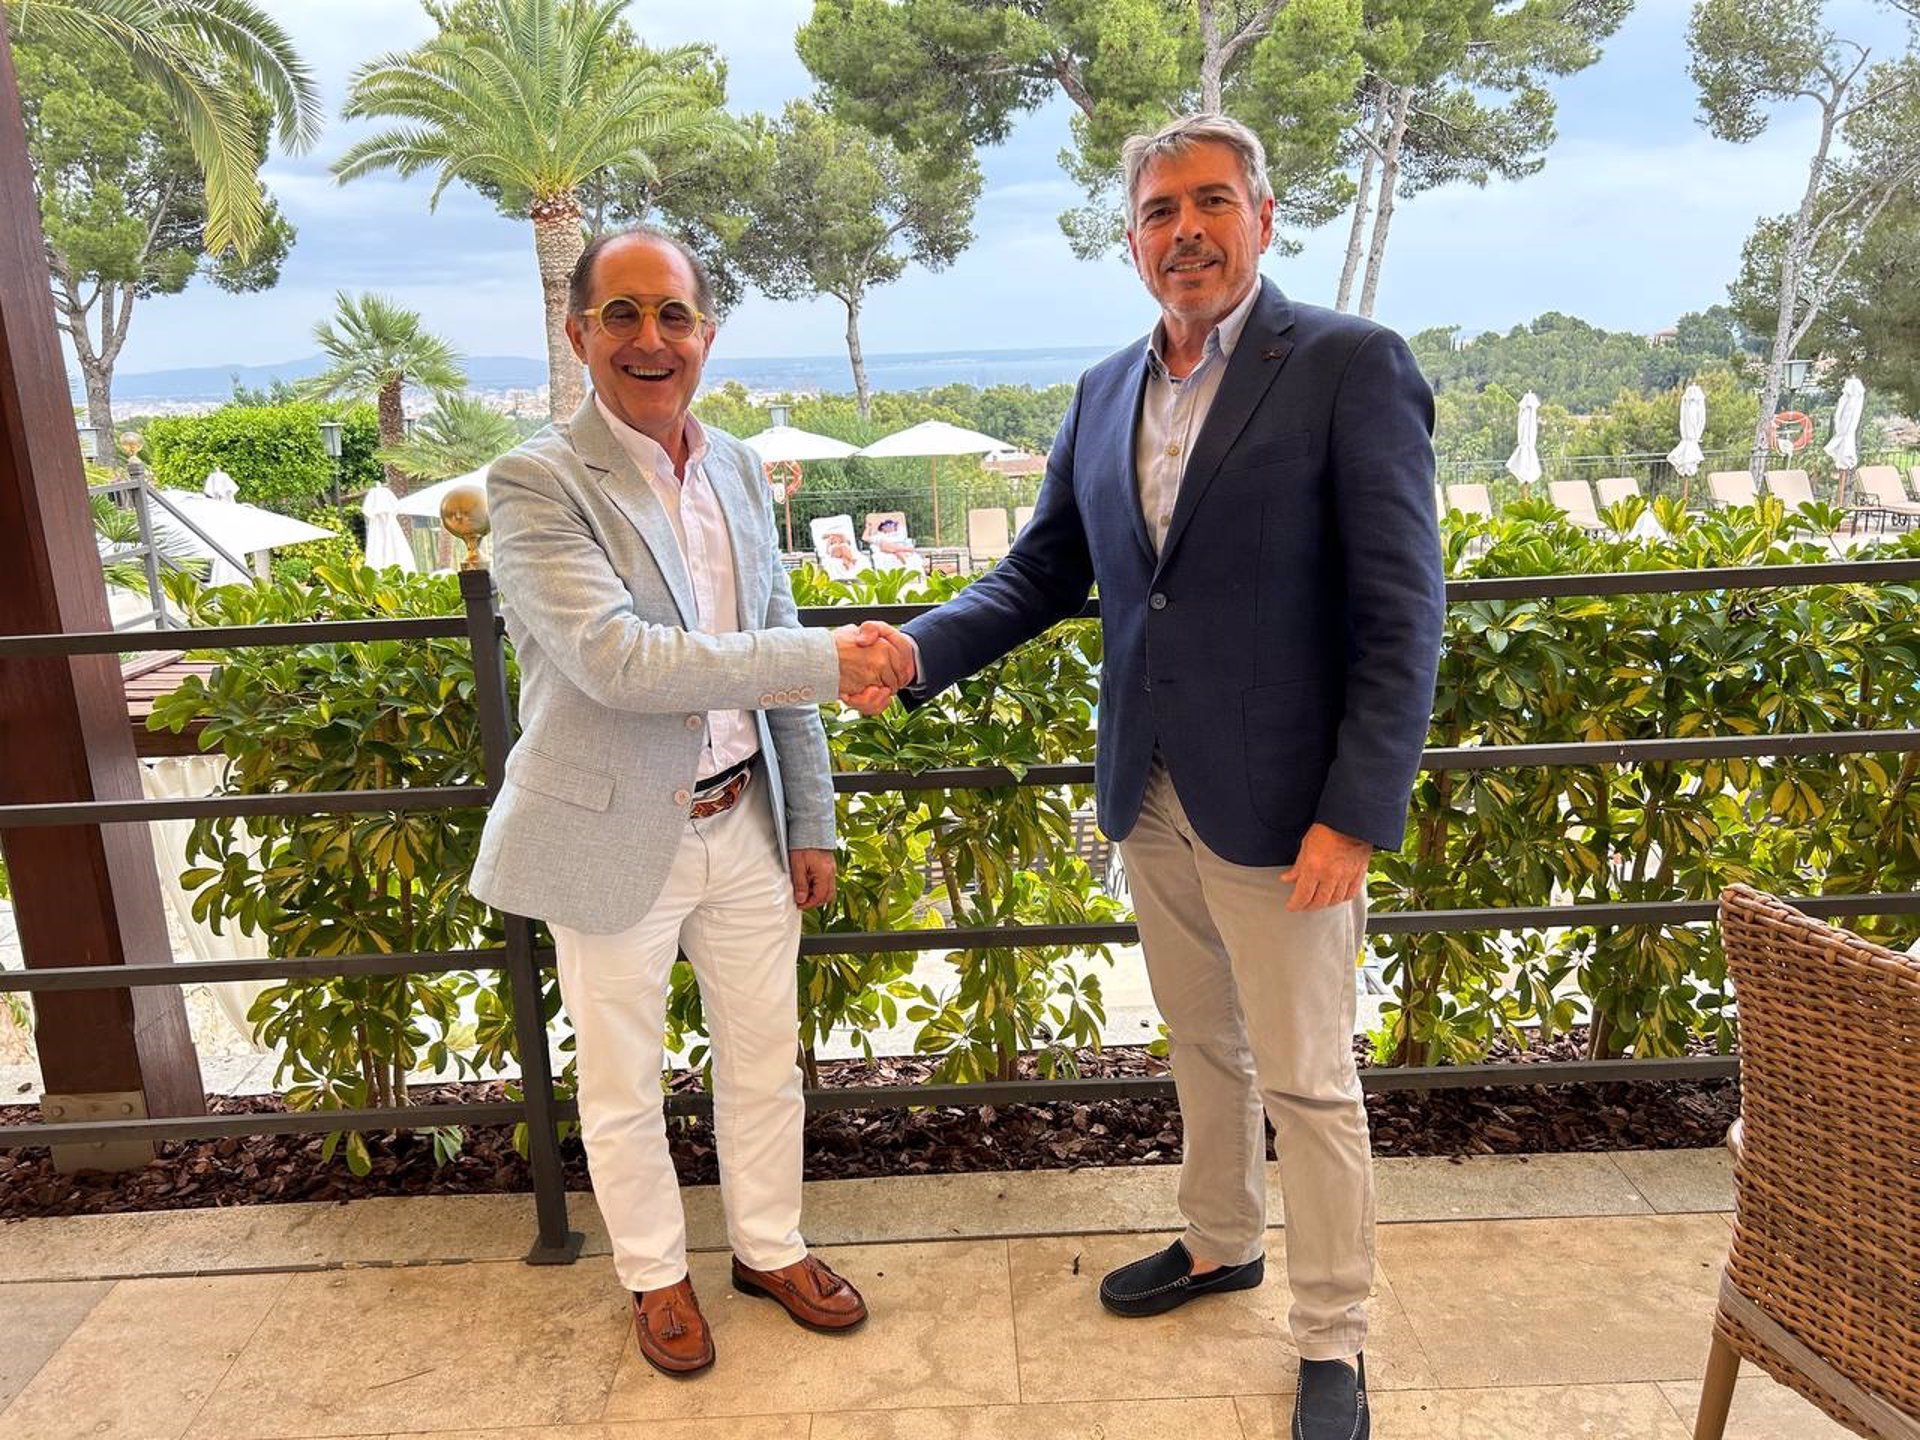 El presidente del Real Club Náutico de Palma, Emerico Fuster, y el delegado de Baleares de Baleària, Joan Serra, han firmado el acuerdo de patrocinio de la naviera con la Copa del Rey de Vela para este 2023. - RCNP